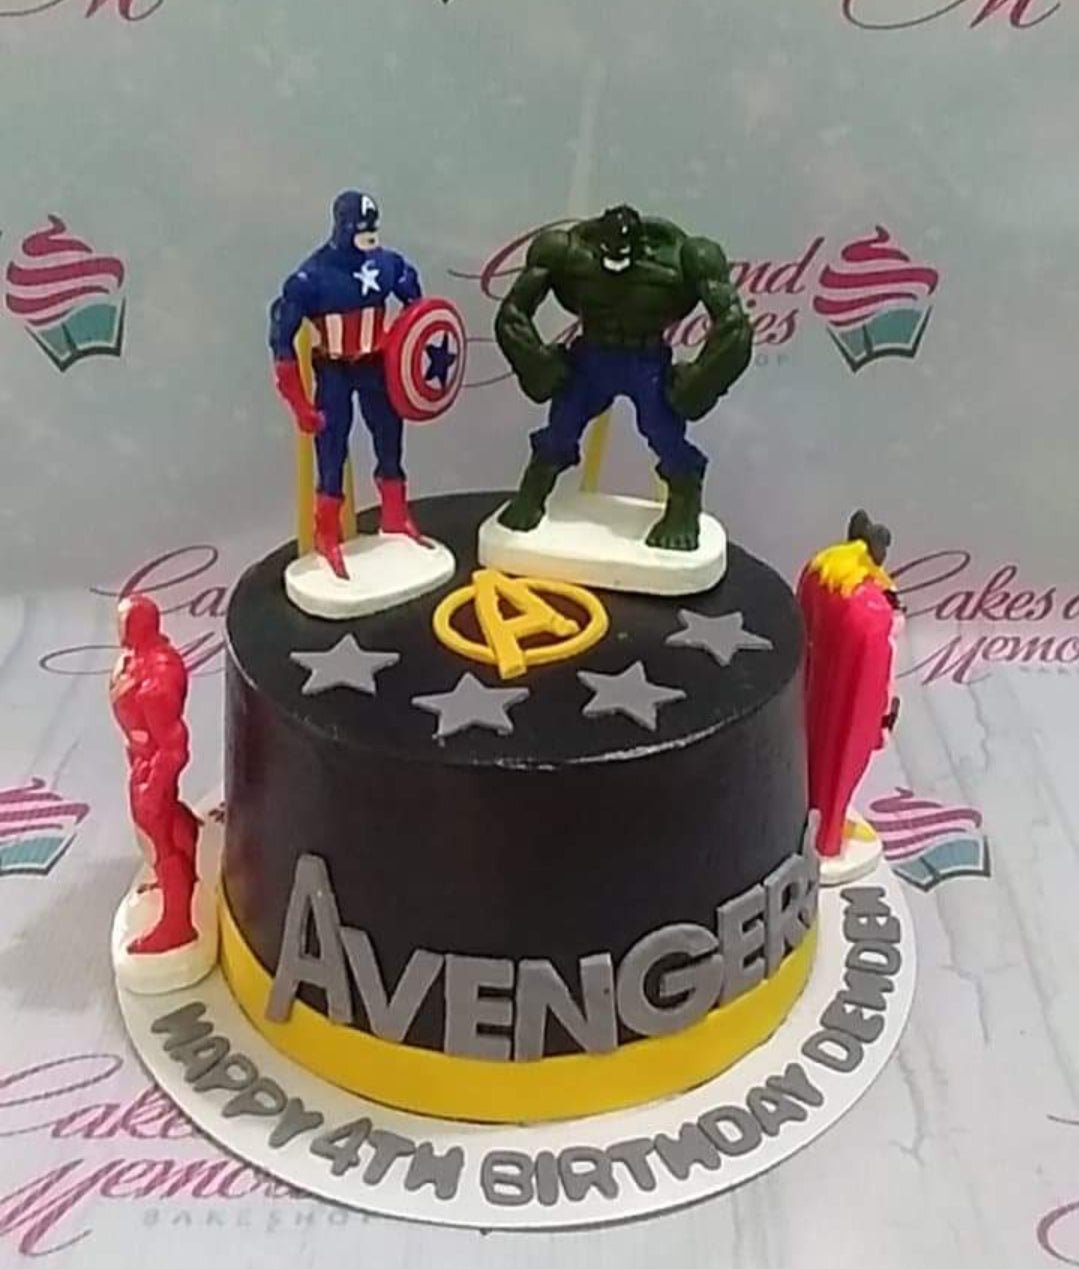 Birthday Avengers Theme Cake Order Online by wishbygift on DeviantArt